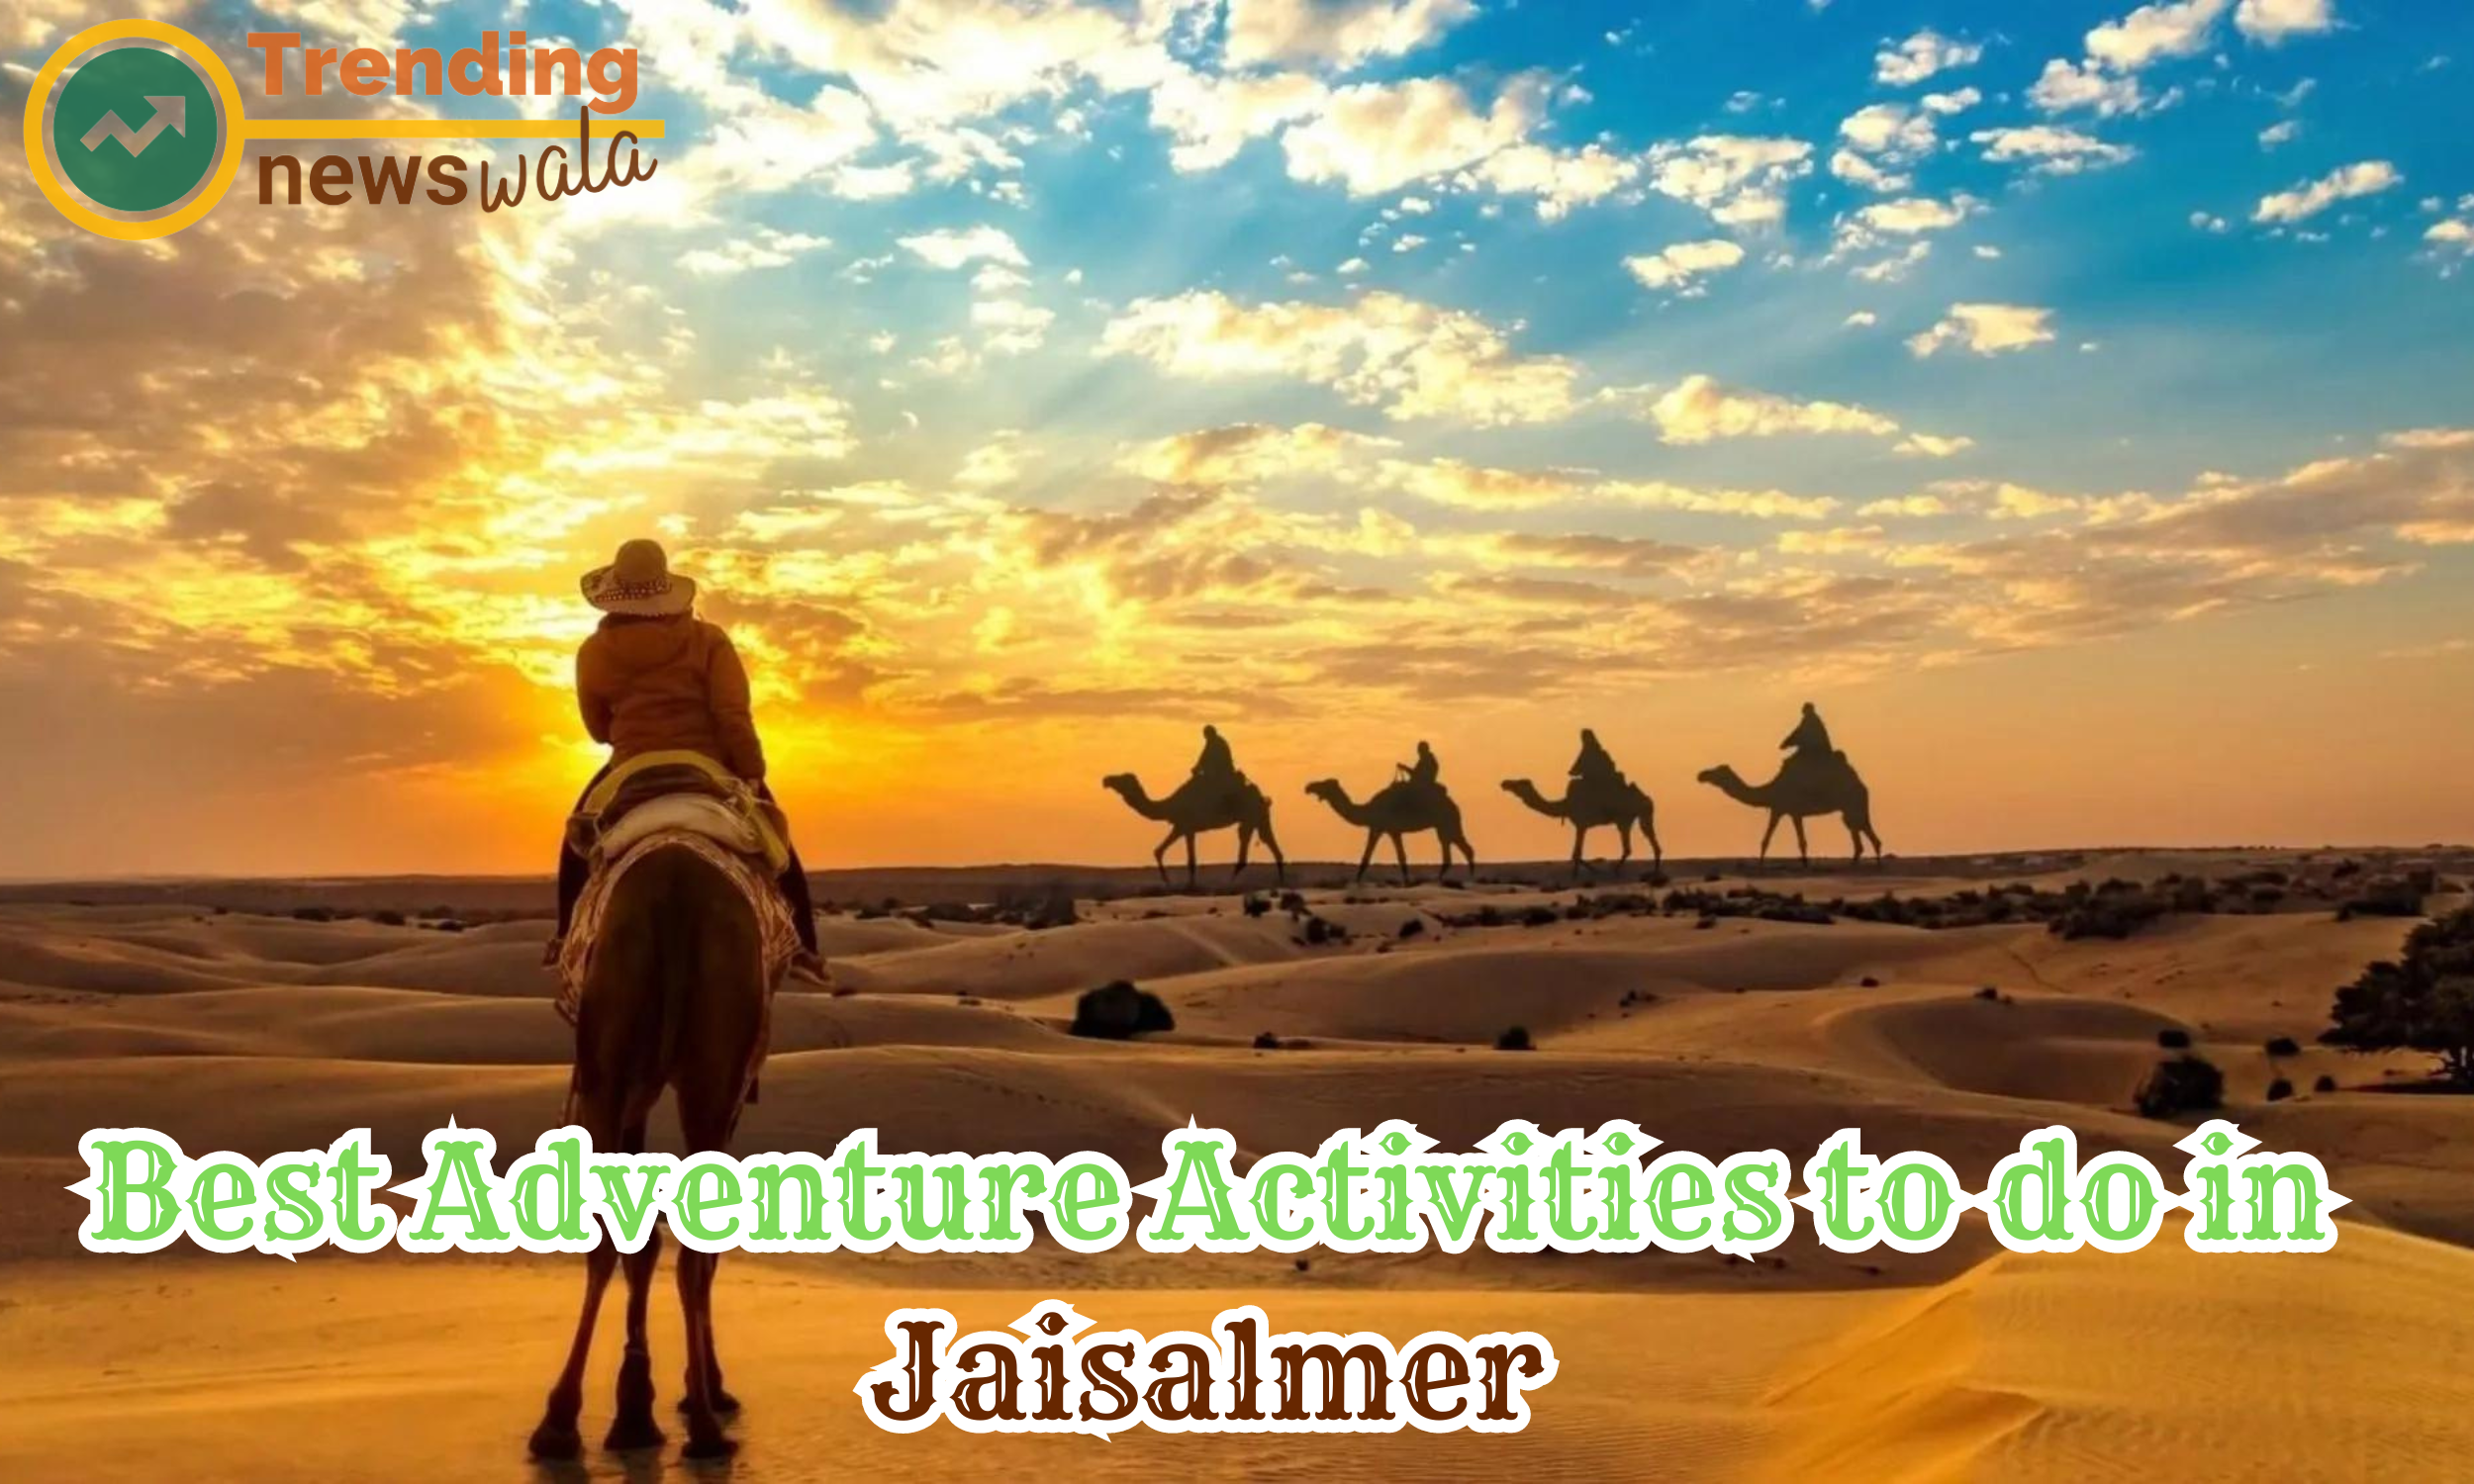 Best Adventure Activities to do in Jaisalmer